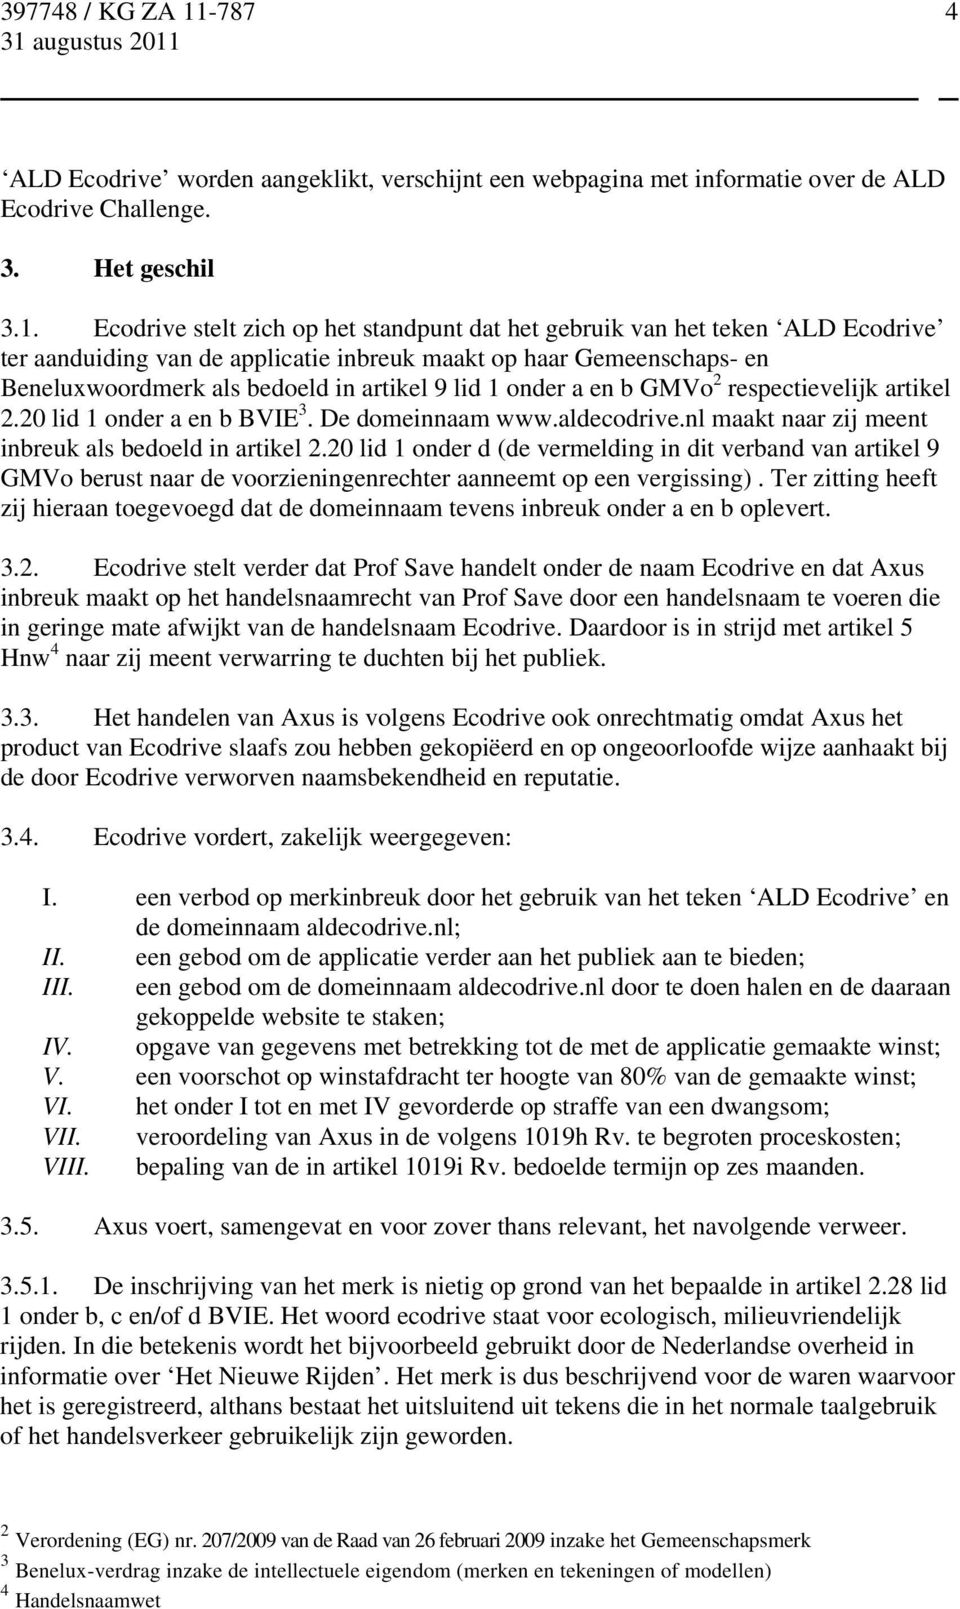 onder a en b GMVo 2 respectievelijk artikel 2.20 lid 1 onder a en b BVIE 3. De domeinnaam www.aldecodrive.nl maakt naar zij meent inbreuk als bedoeld in artikel 2.